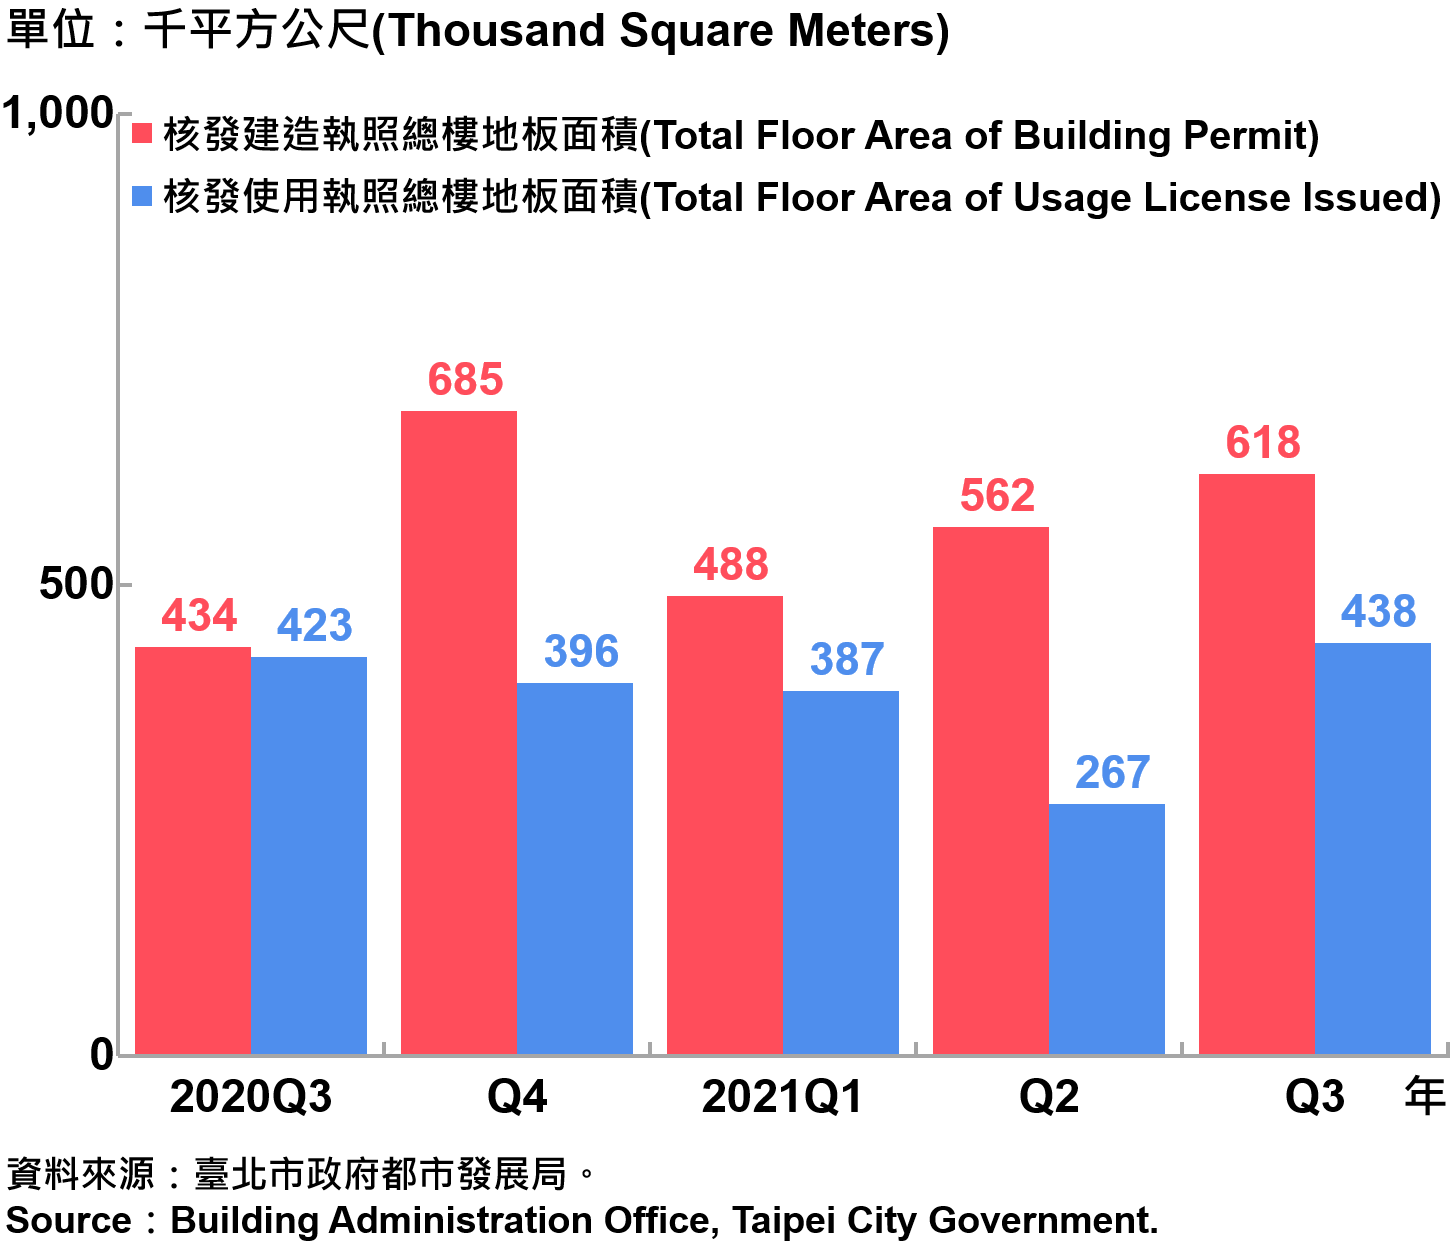 臺北市核發建築物執照與使用執照總樓地板面積—20210Q3　Building with Newly Construction and Using Construction Permits Issued in Taipei City—2021Q3